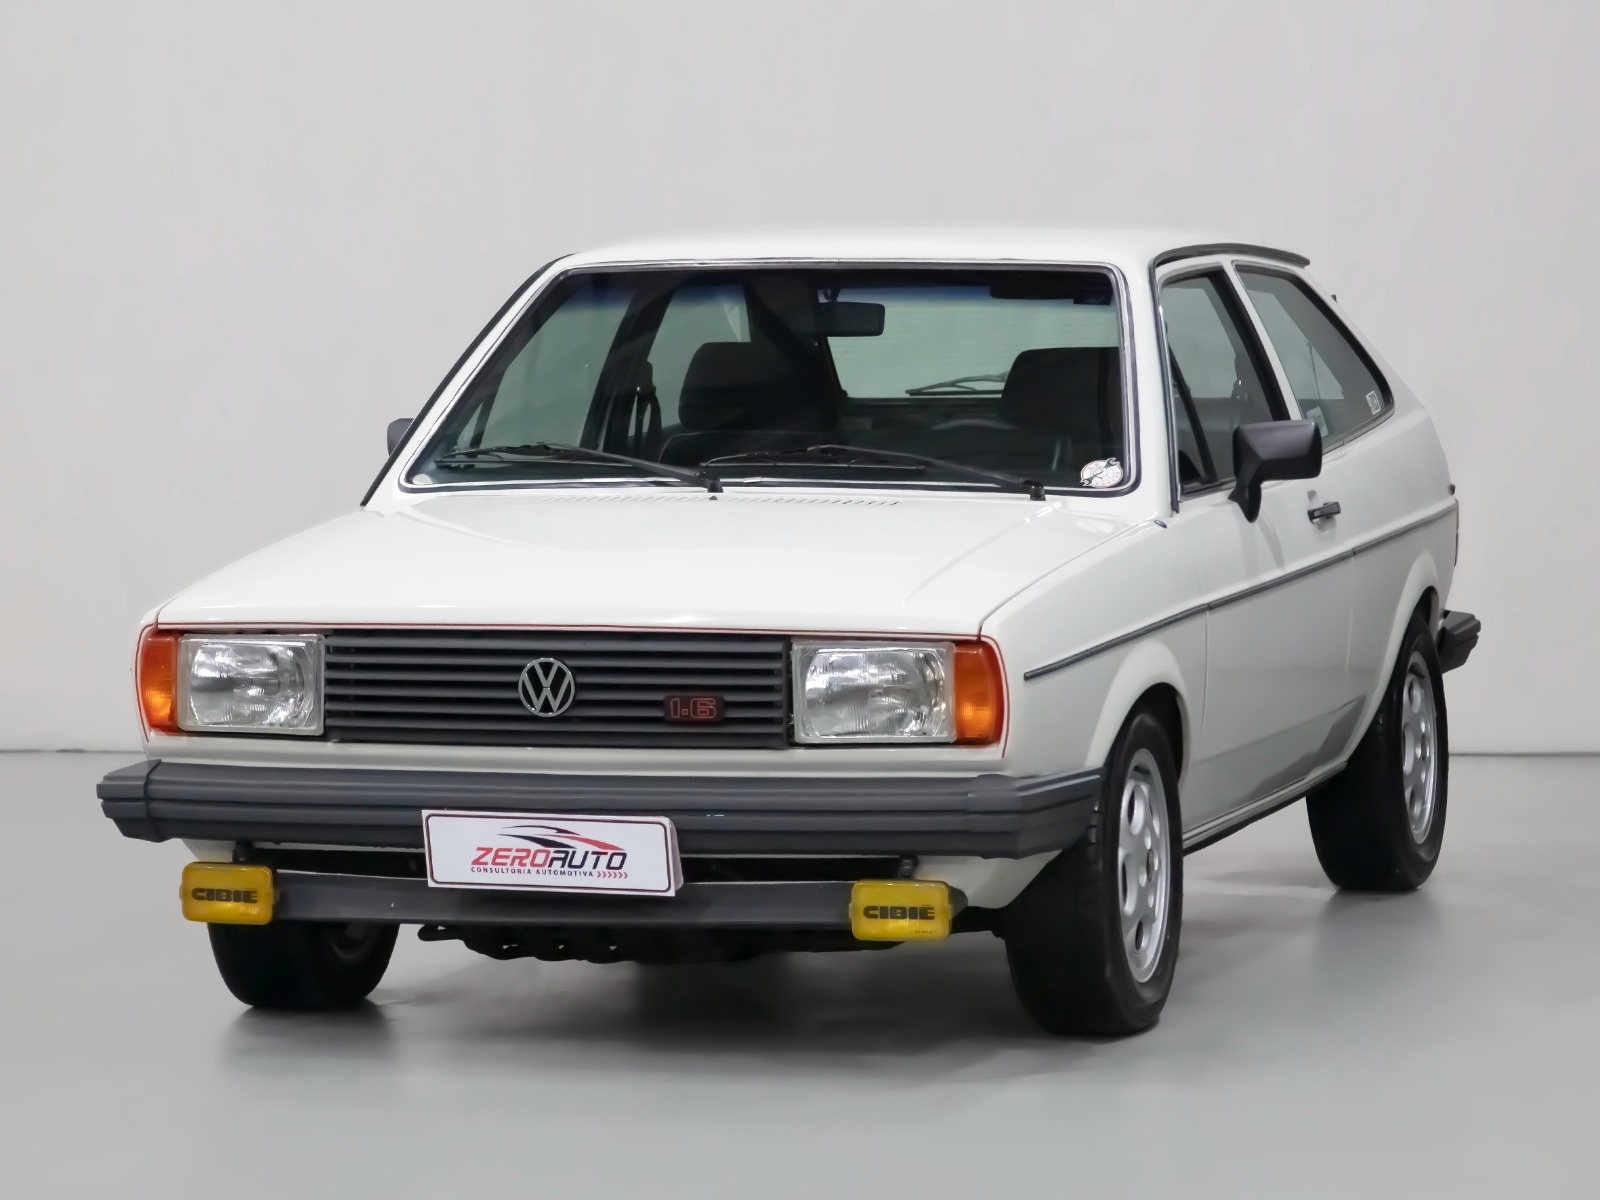 VW Gol LS 1986: Ousadia nos mínimos detalhes - Revista Car Stereo